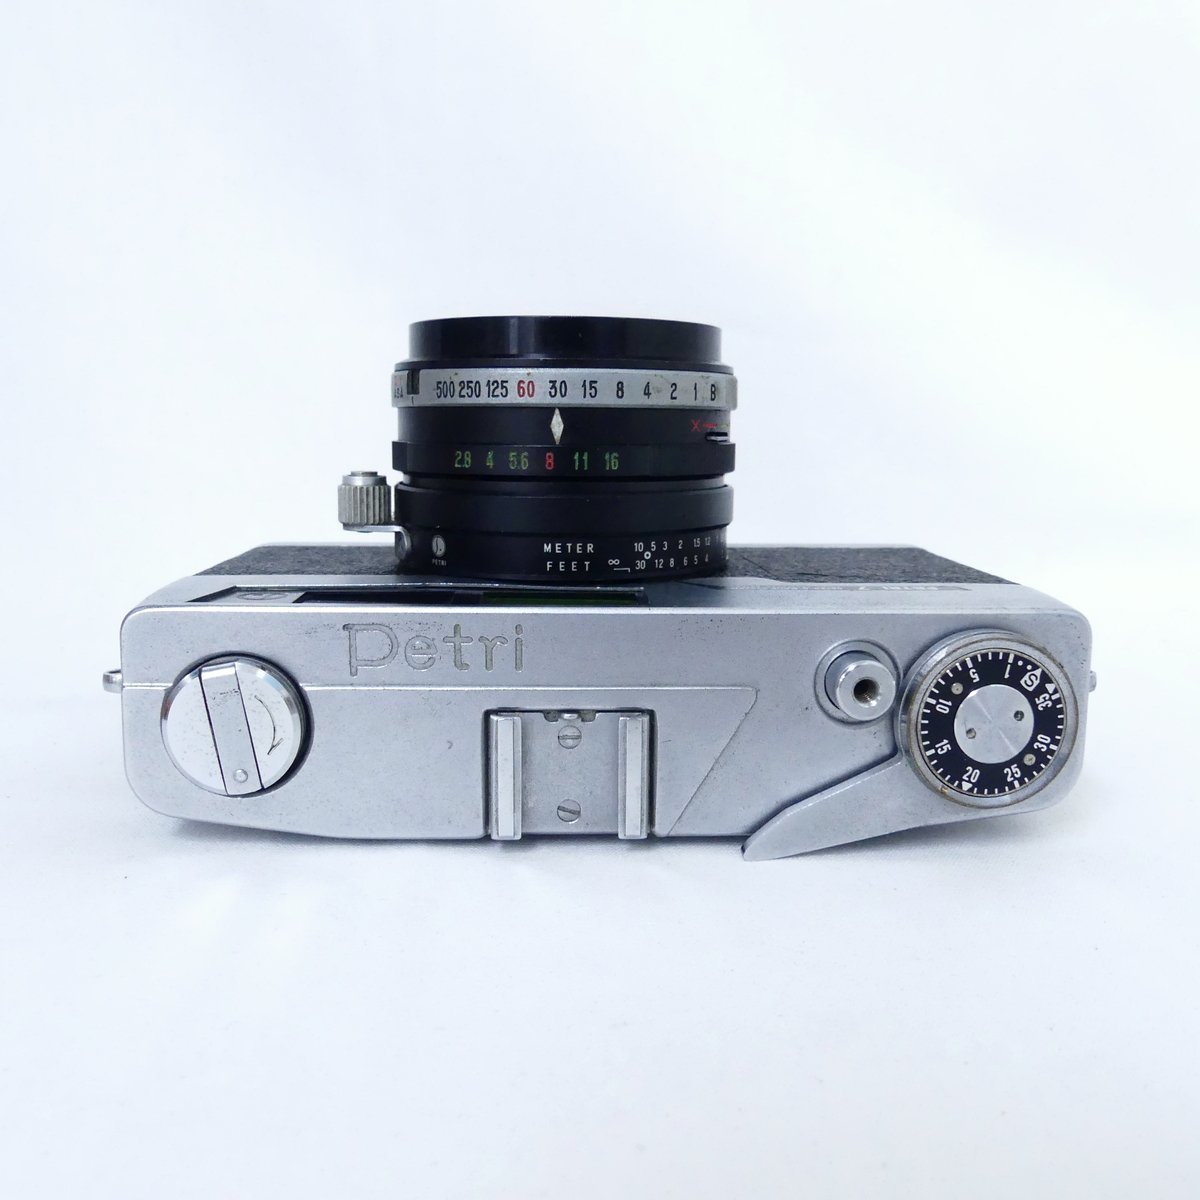 PETRI Pro7フィルムカメラレンズカバーセット - フィルムカメラ